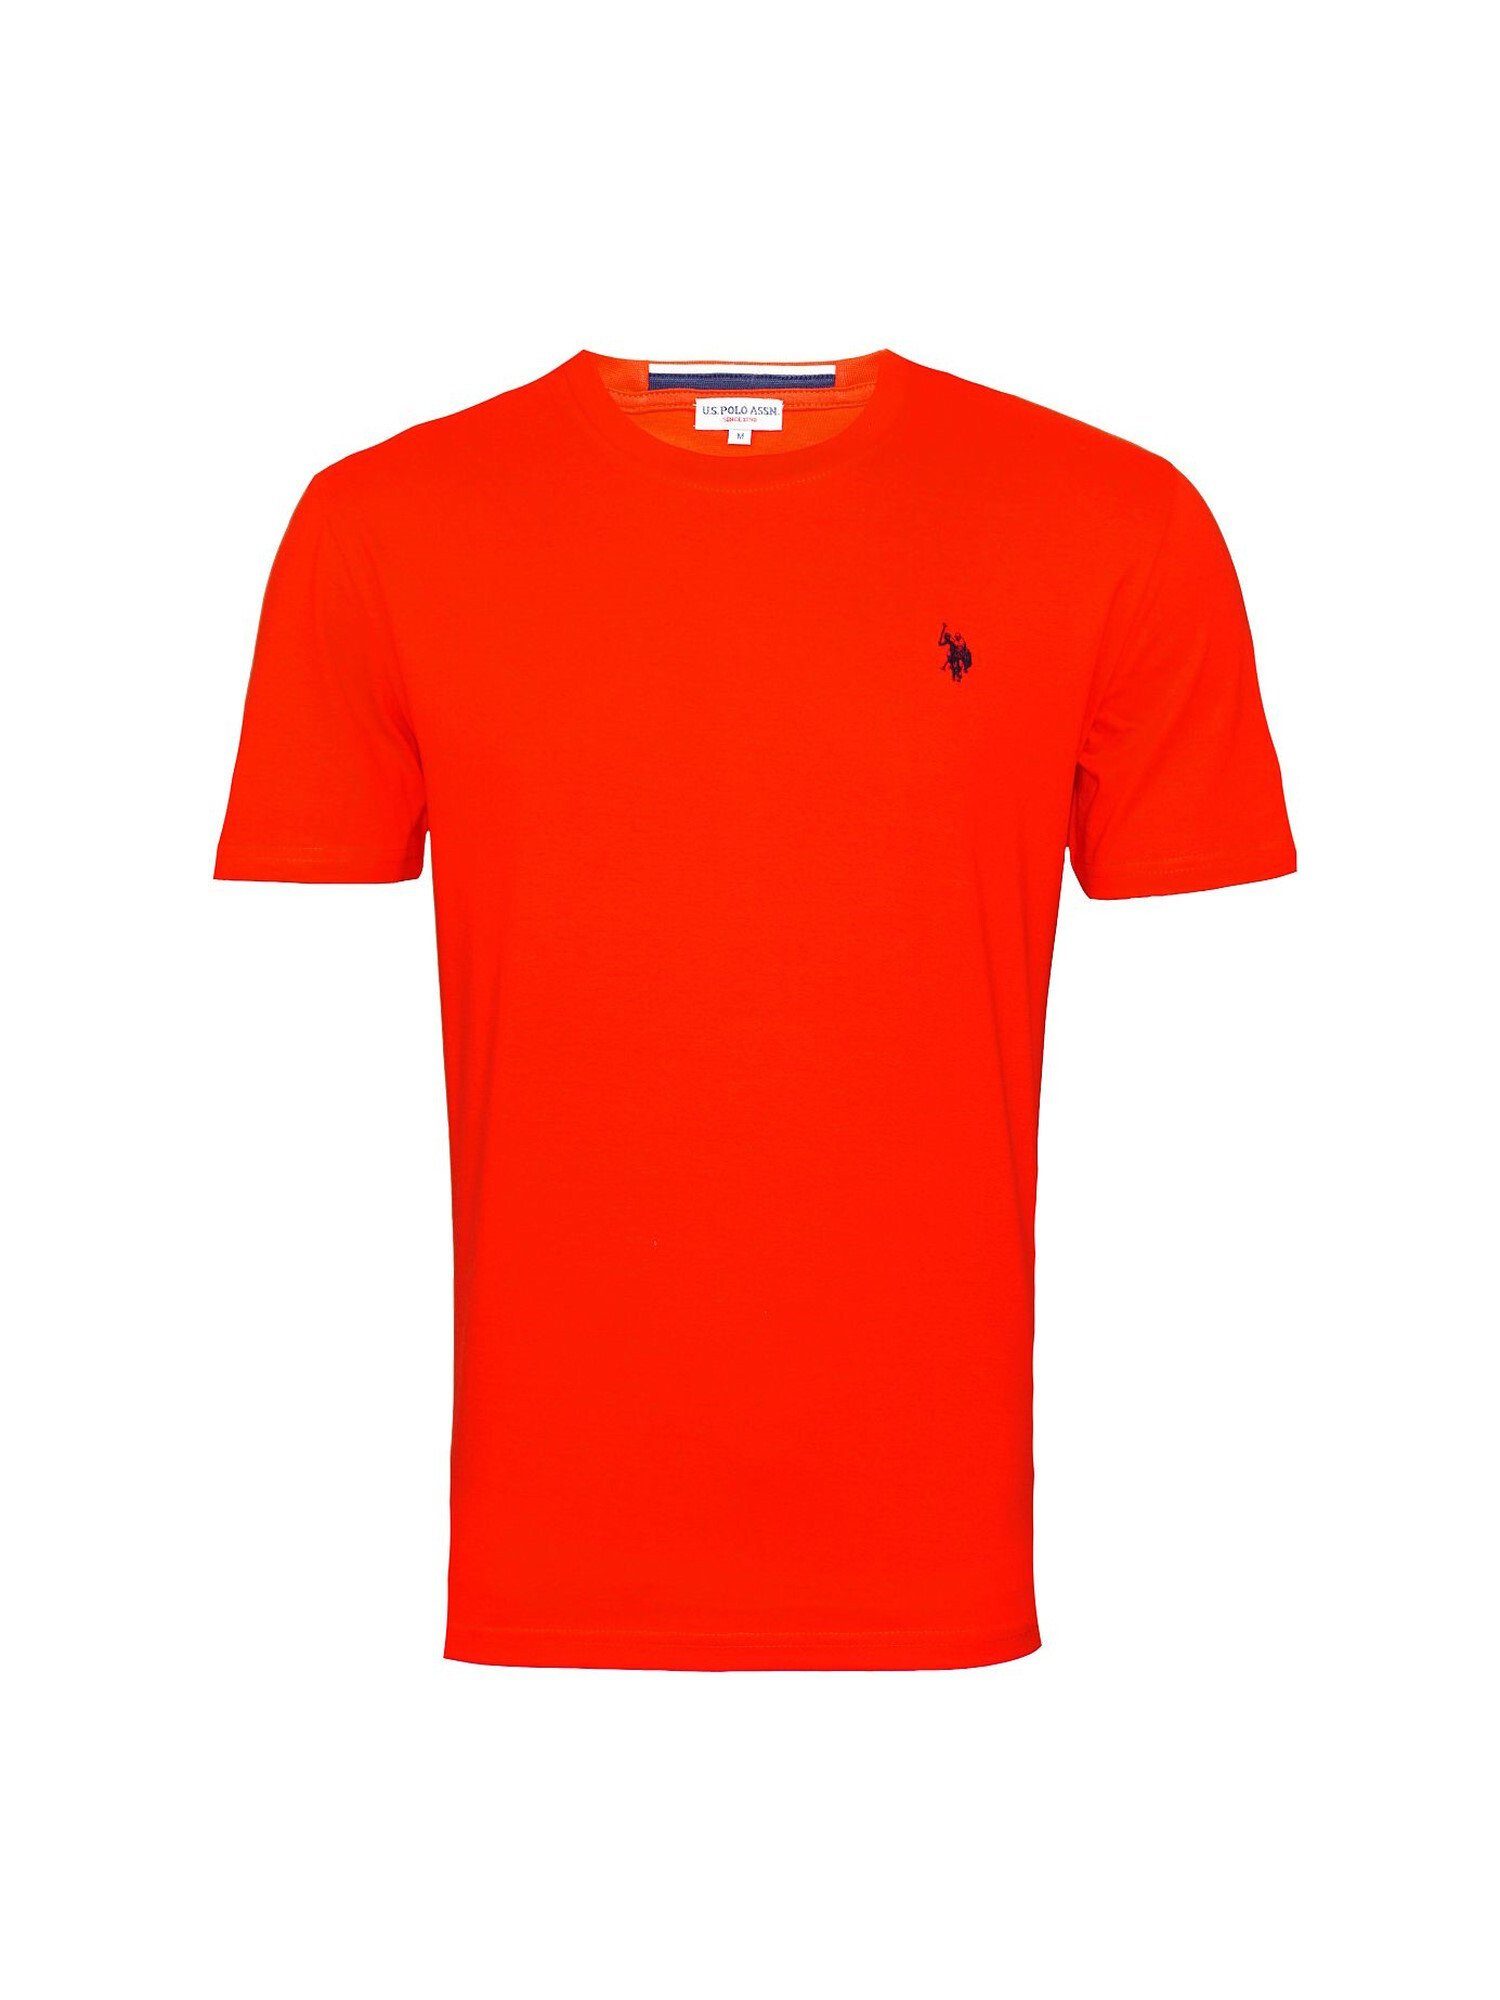 T-Shirt T-Shirt rot Shirt Assn Polo Kurzarmshirt Shortsleeve Rundhals U.S.